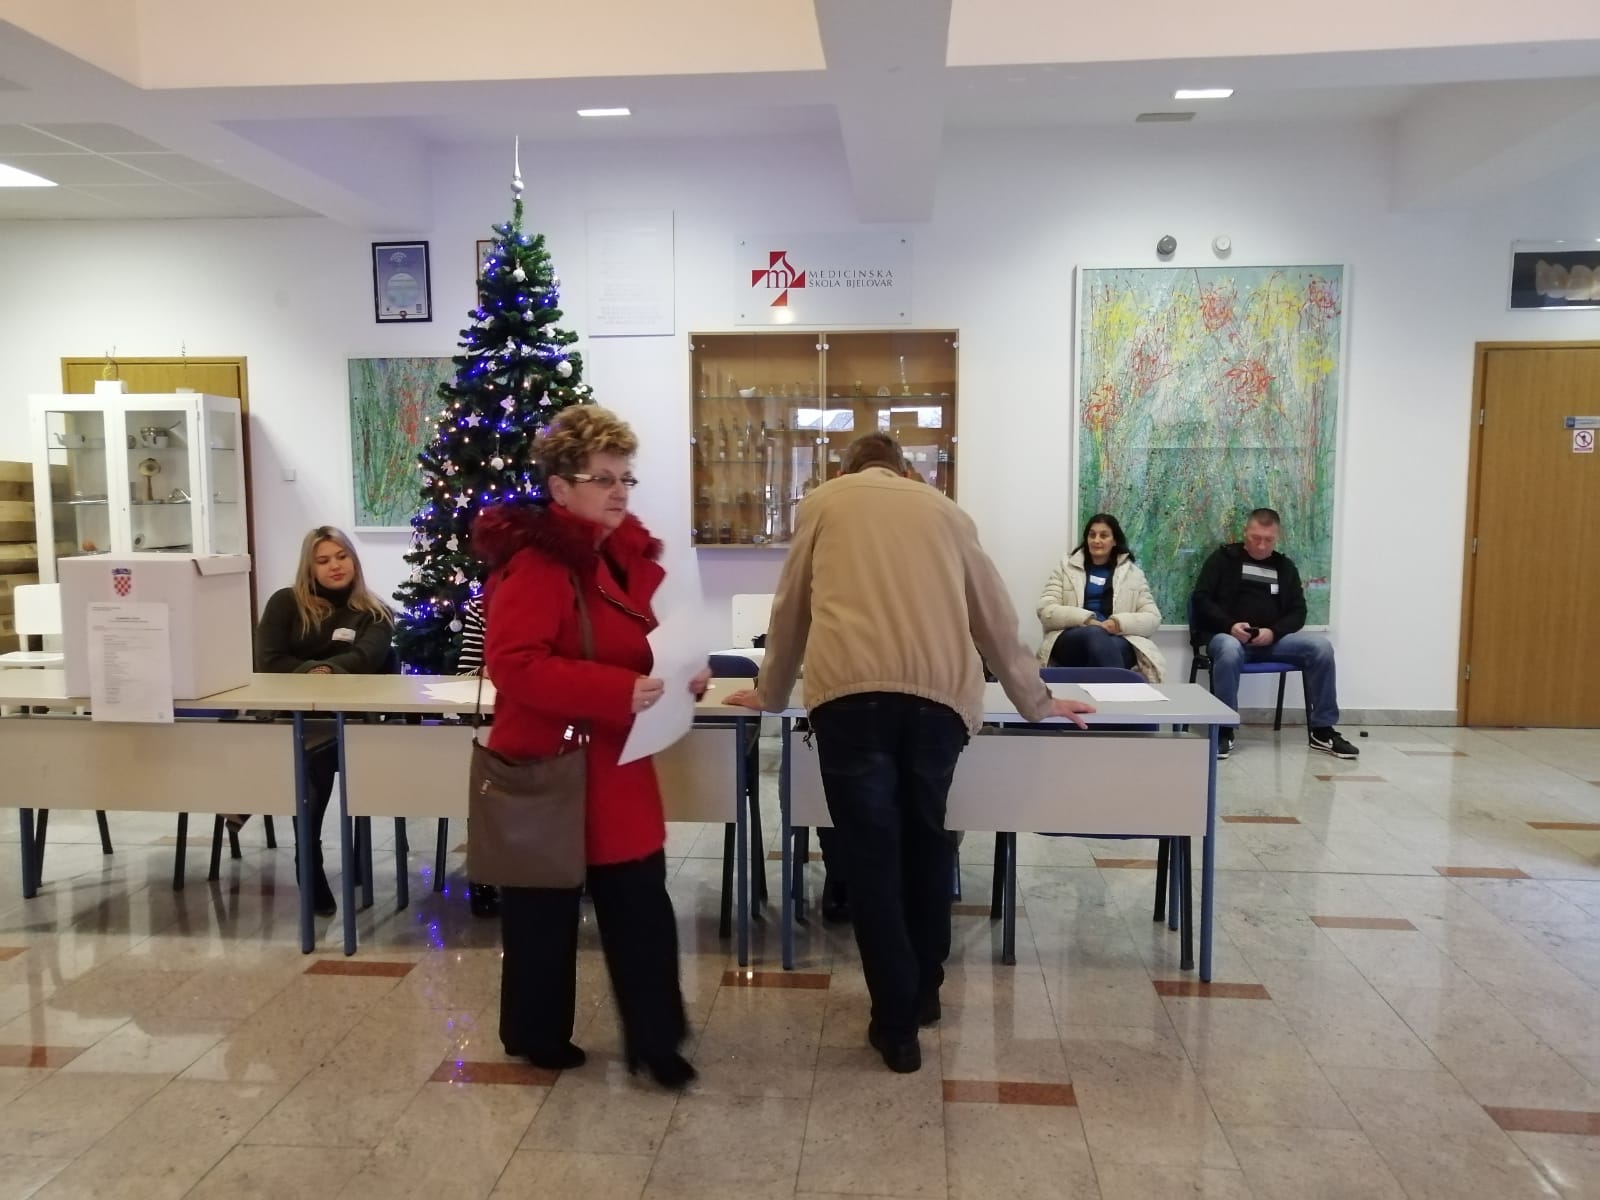 REZULTATI IZBORA Evo kako je glasovala središnja Hrvatska